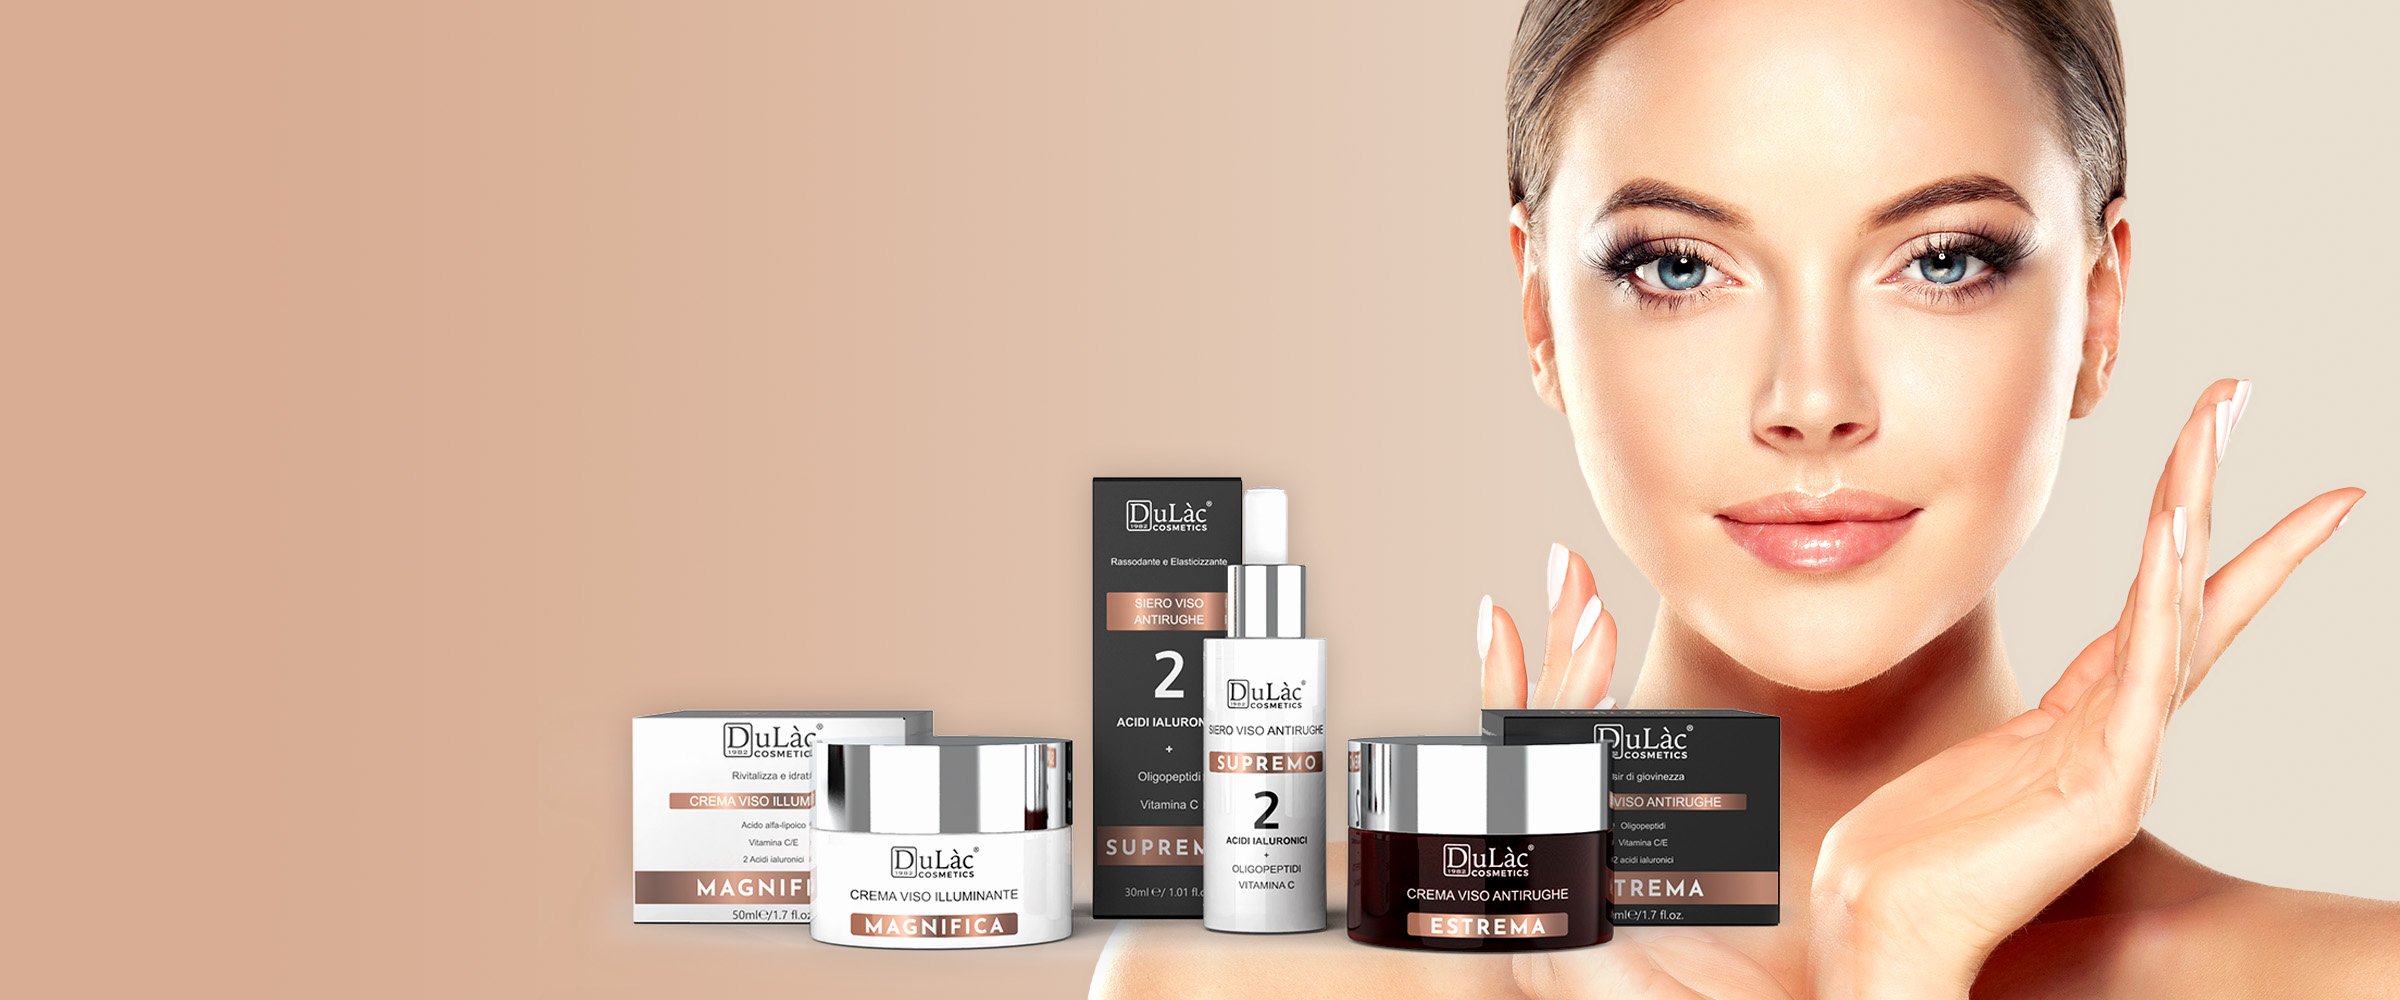 dulac cosmetics promo